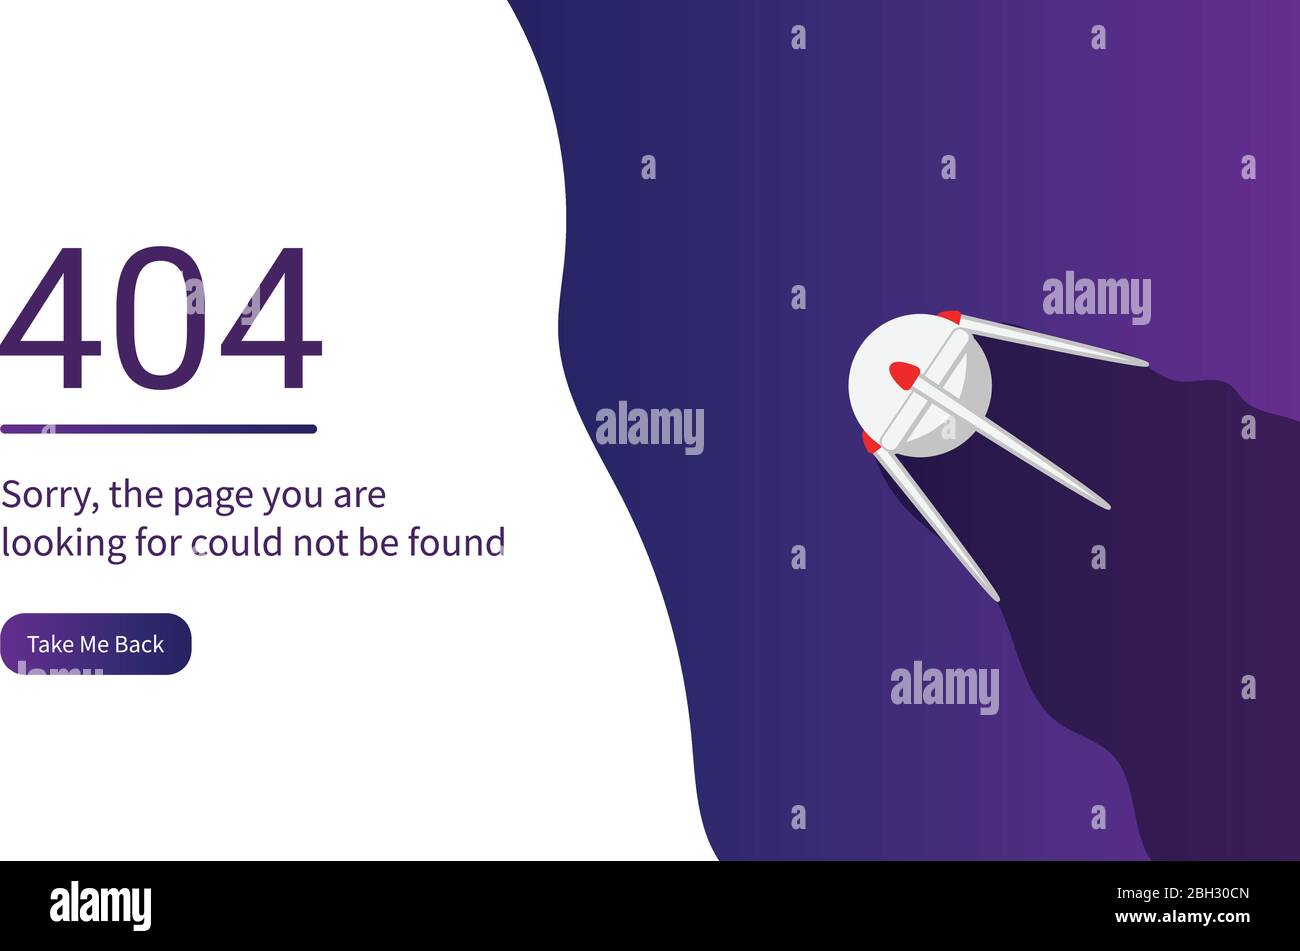 Hãy xem qua thiết kế trang web lỗi 404 đầy sáng tạo và độc đáo, giúp nâng cao trải nghiệm người dùng và tăng cường tính thẩm mỹ của trang web.